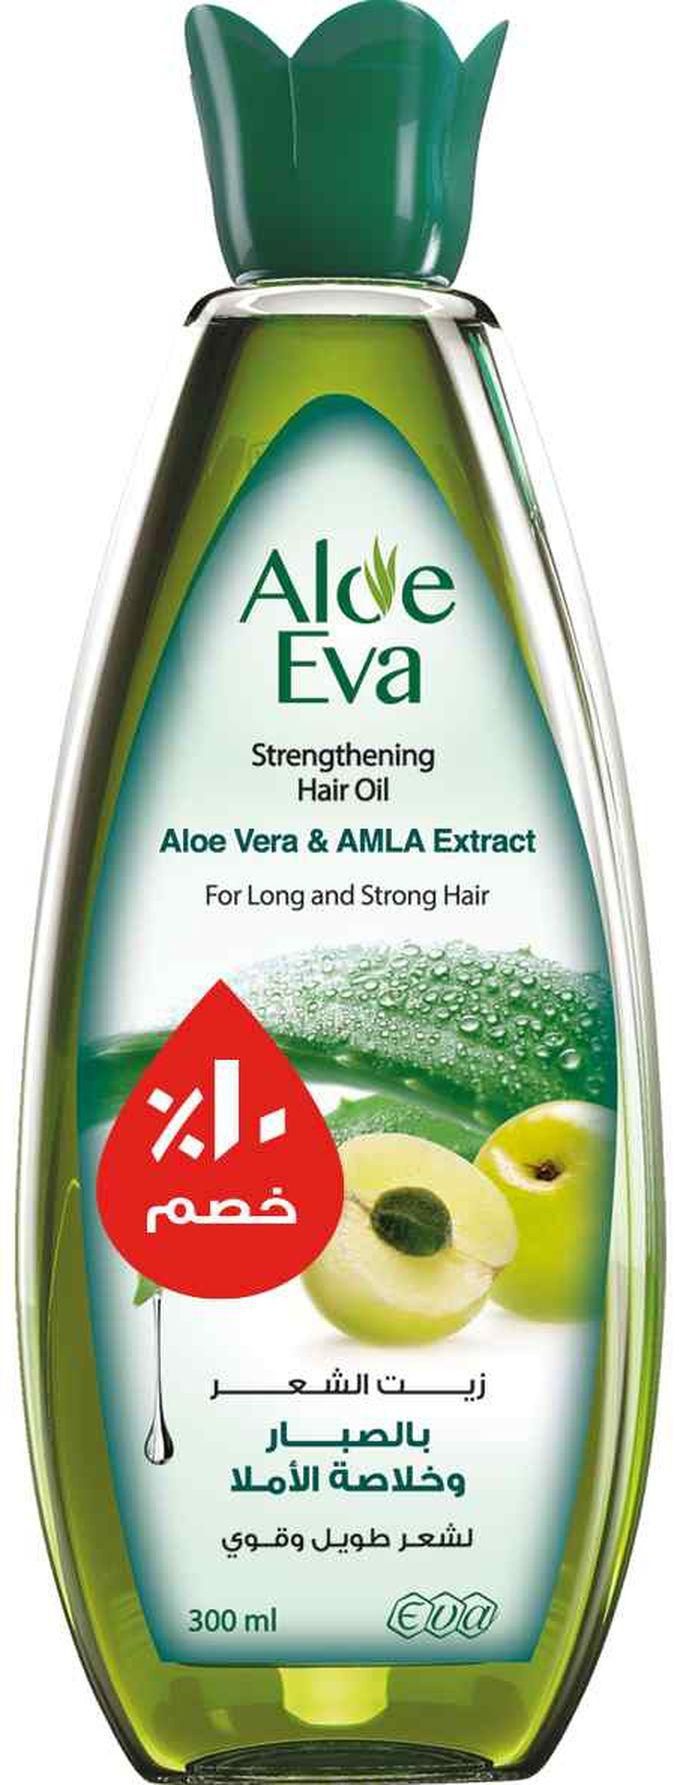 Aloe Eva عرض زيت شعر بالصبار وخلاصة الأملا 300مل (10%)